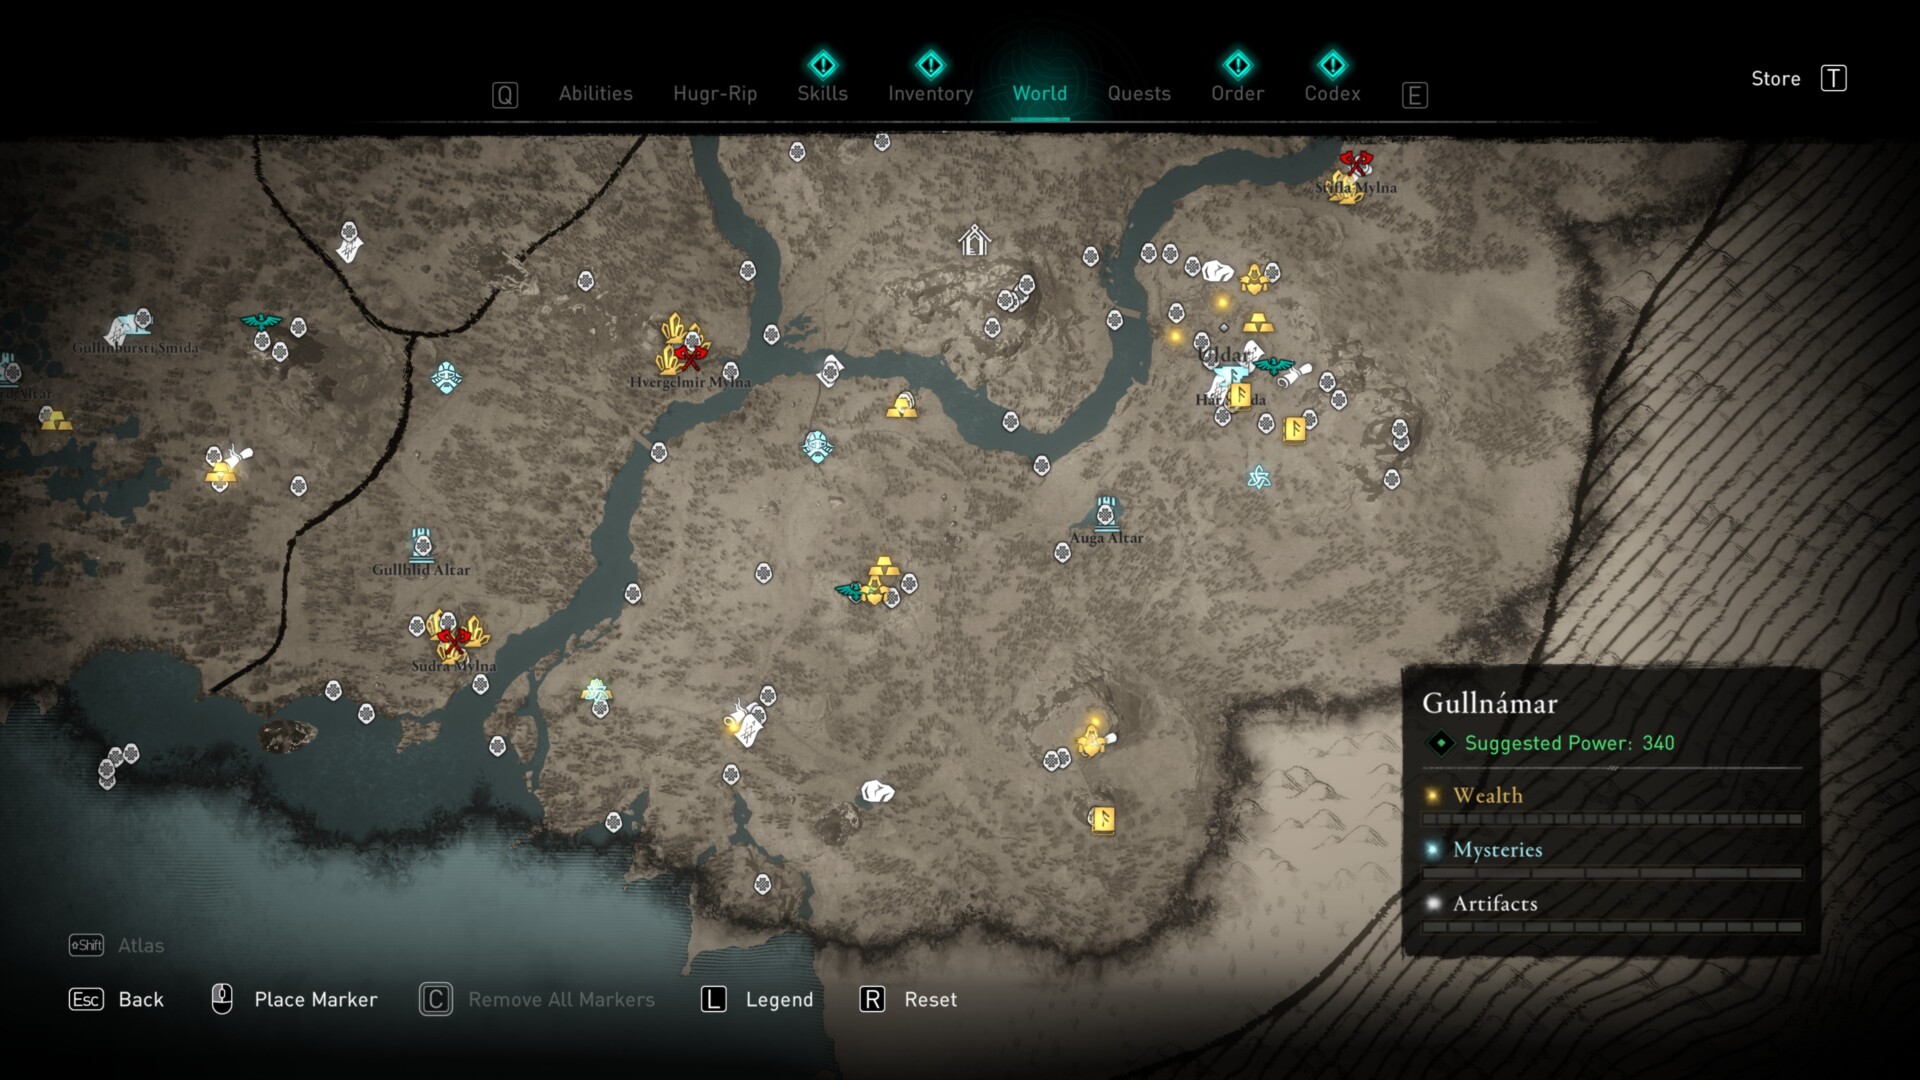 Assassin's Creed Valhalla: Dawn of Ragnarok — Svartalfheim map guide